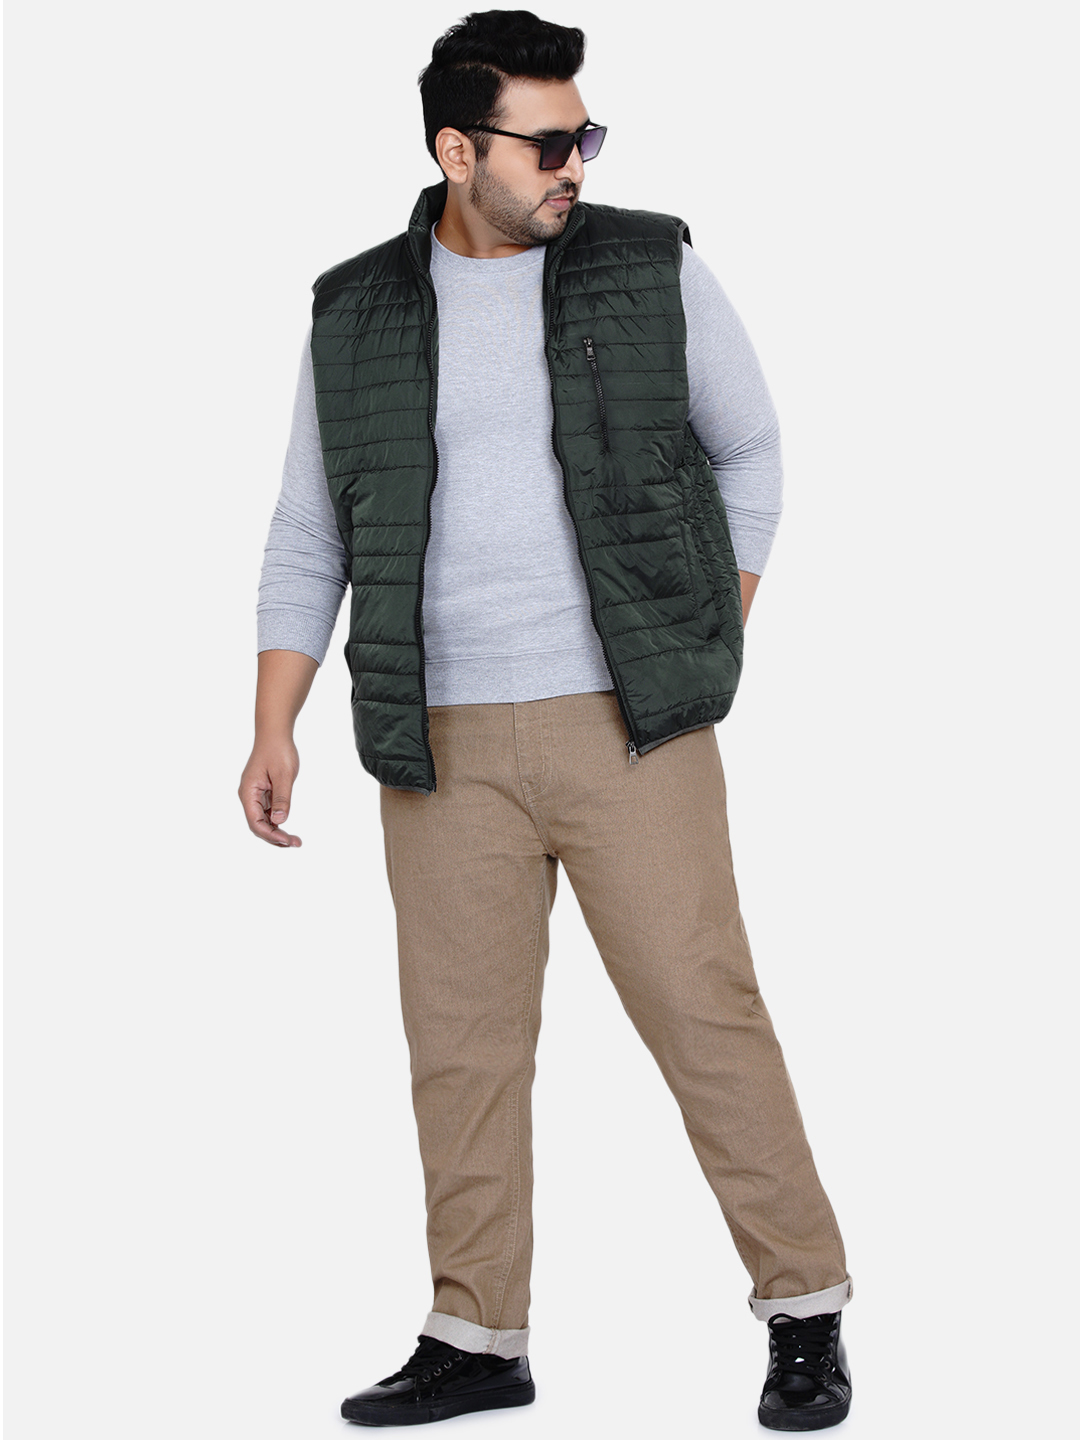 winterwear/jackets/JPJKT73010A/jpjkt73010a-1.jpg